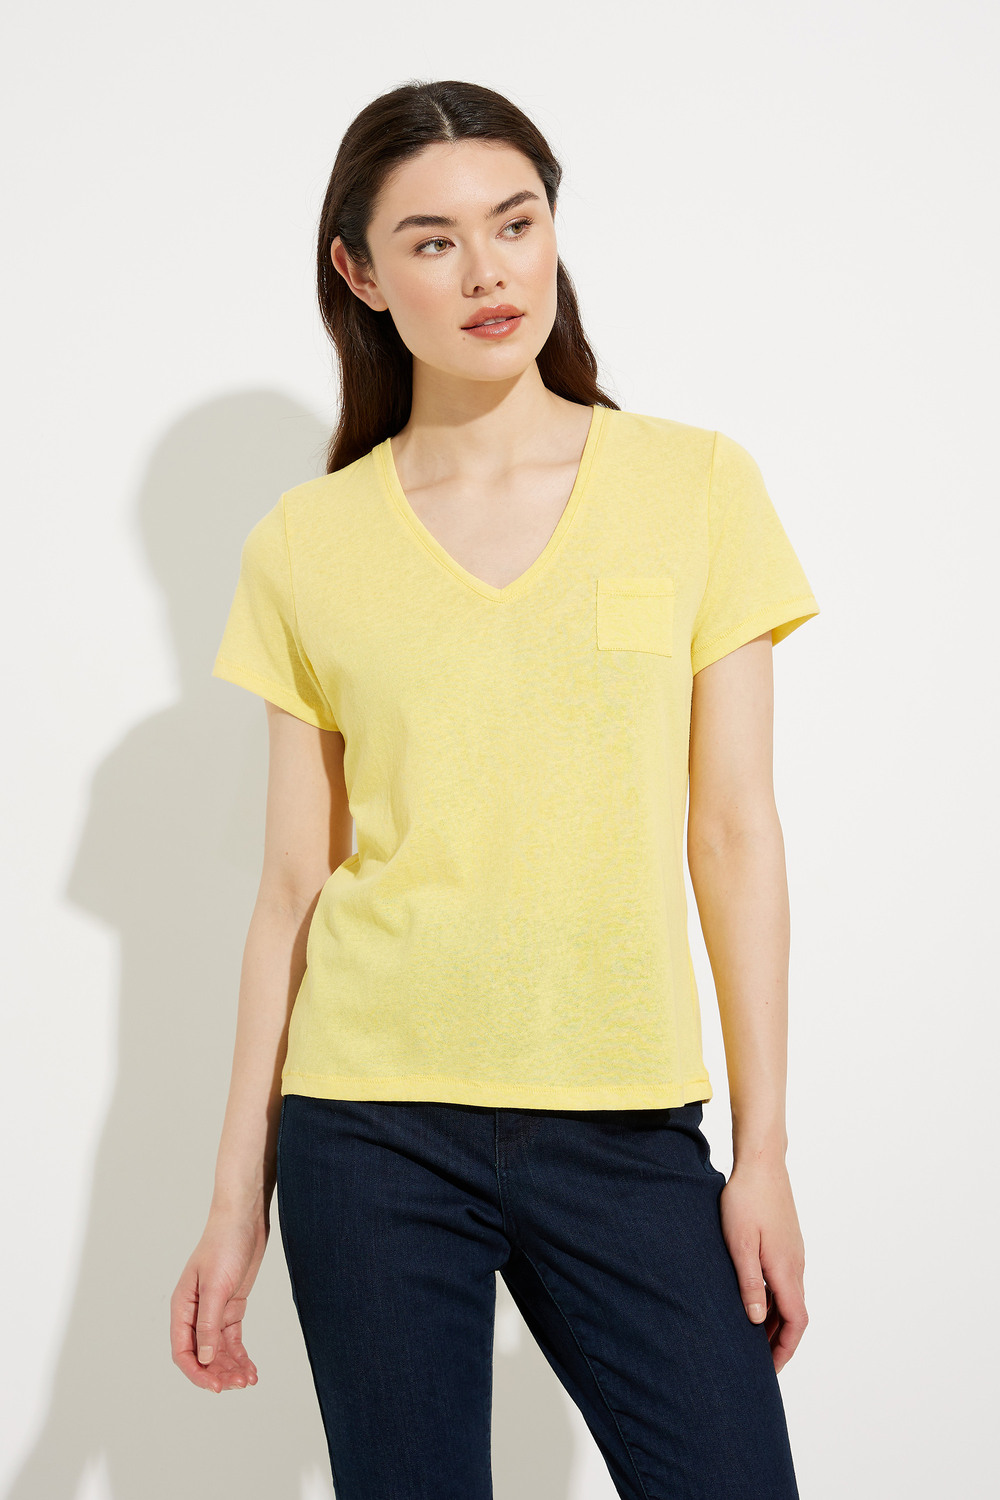 T-shirt basique avec poche modèle A41091. Yellow